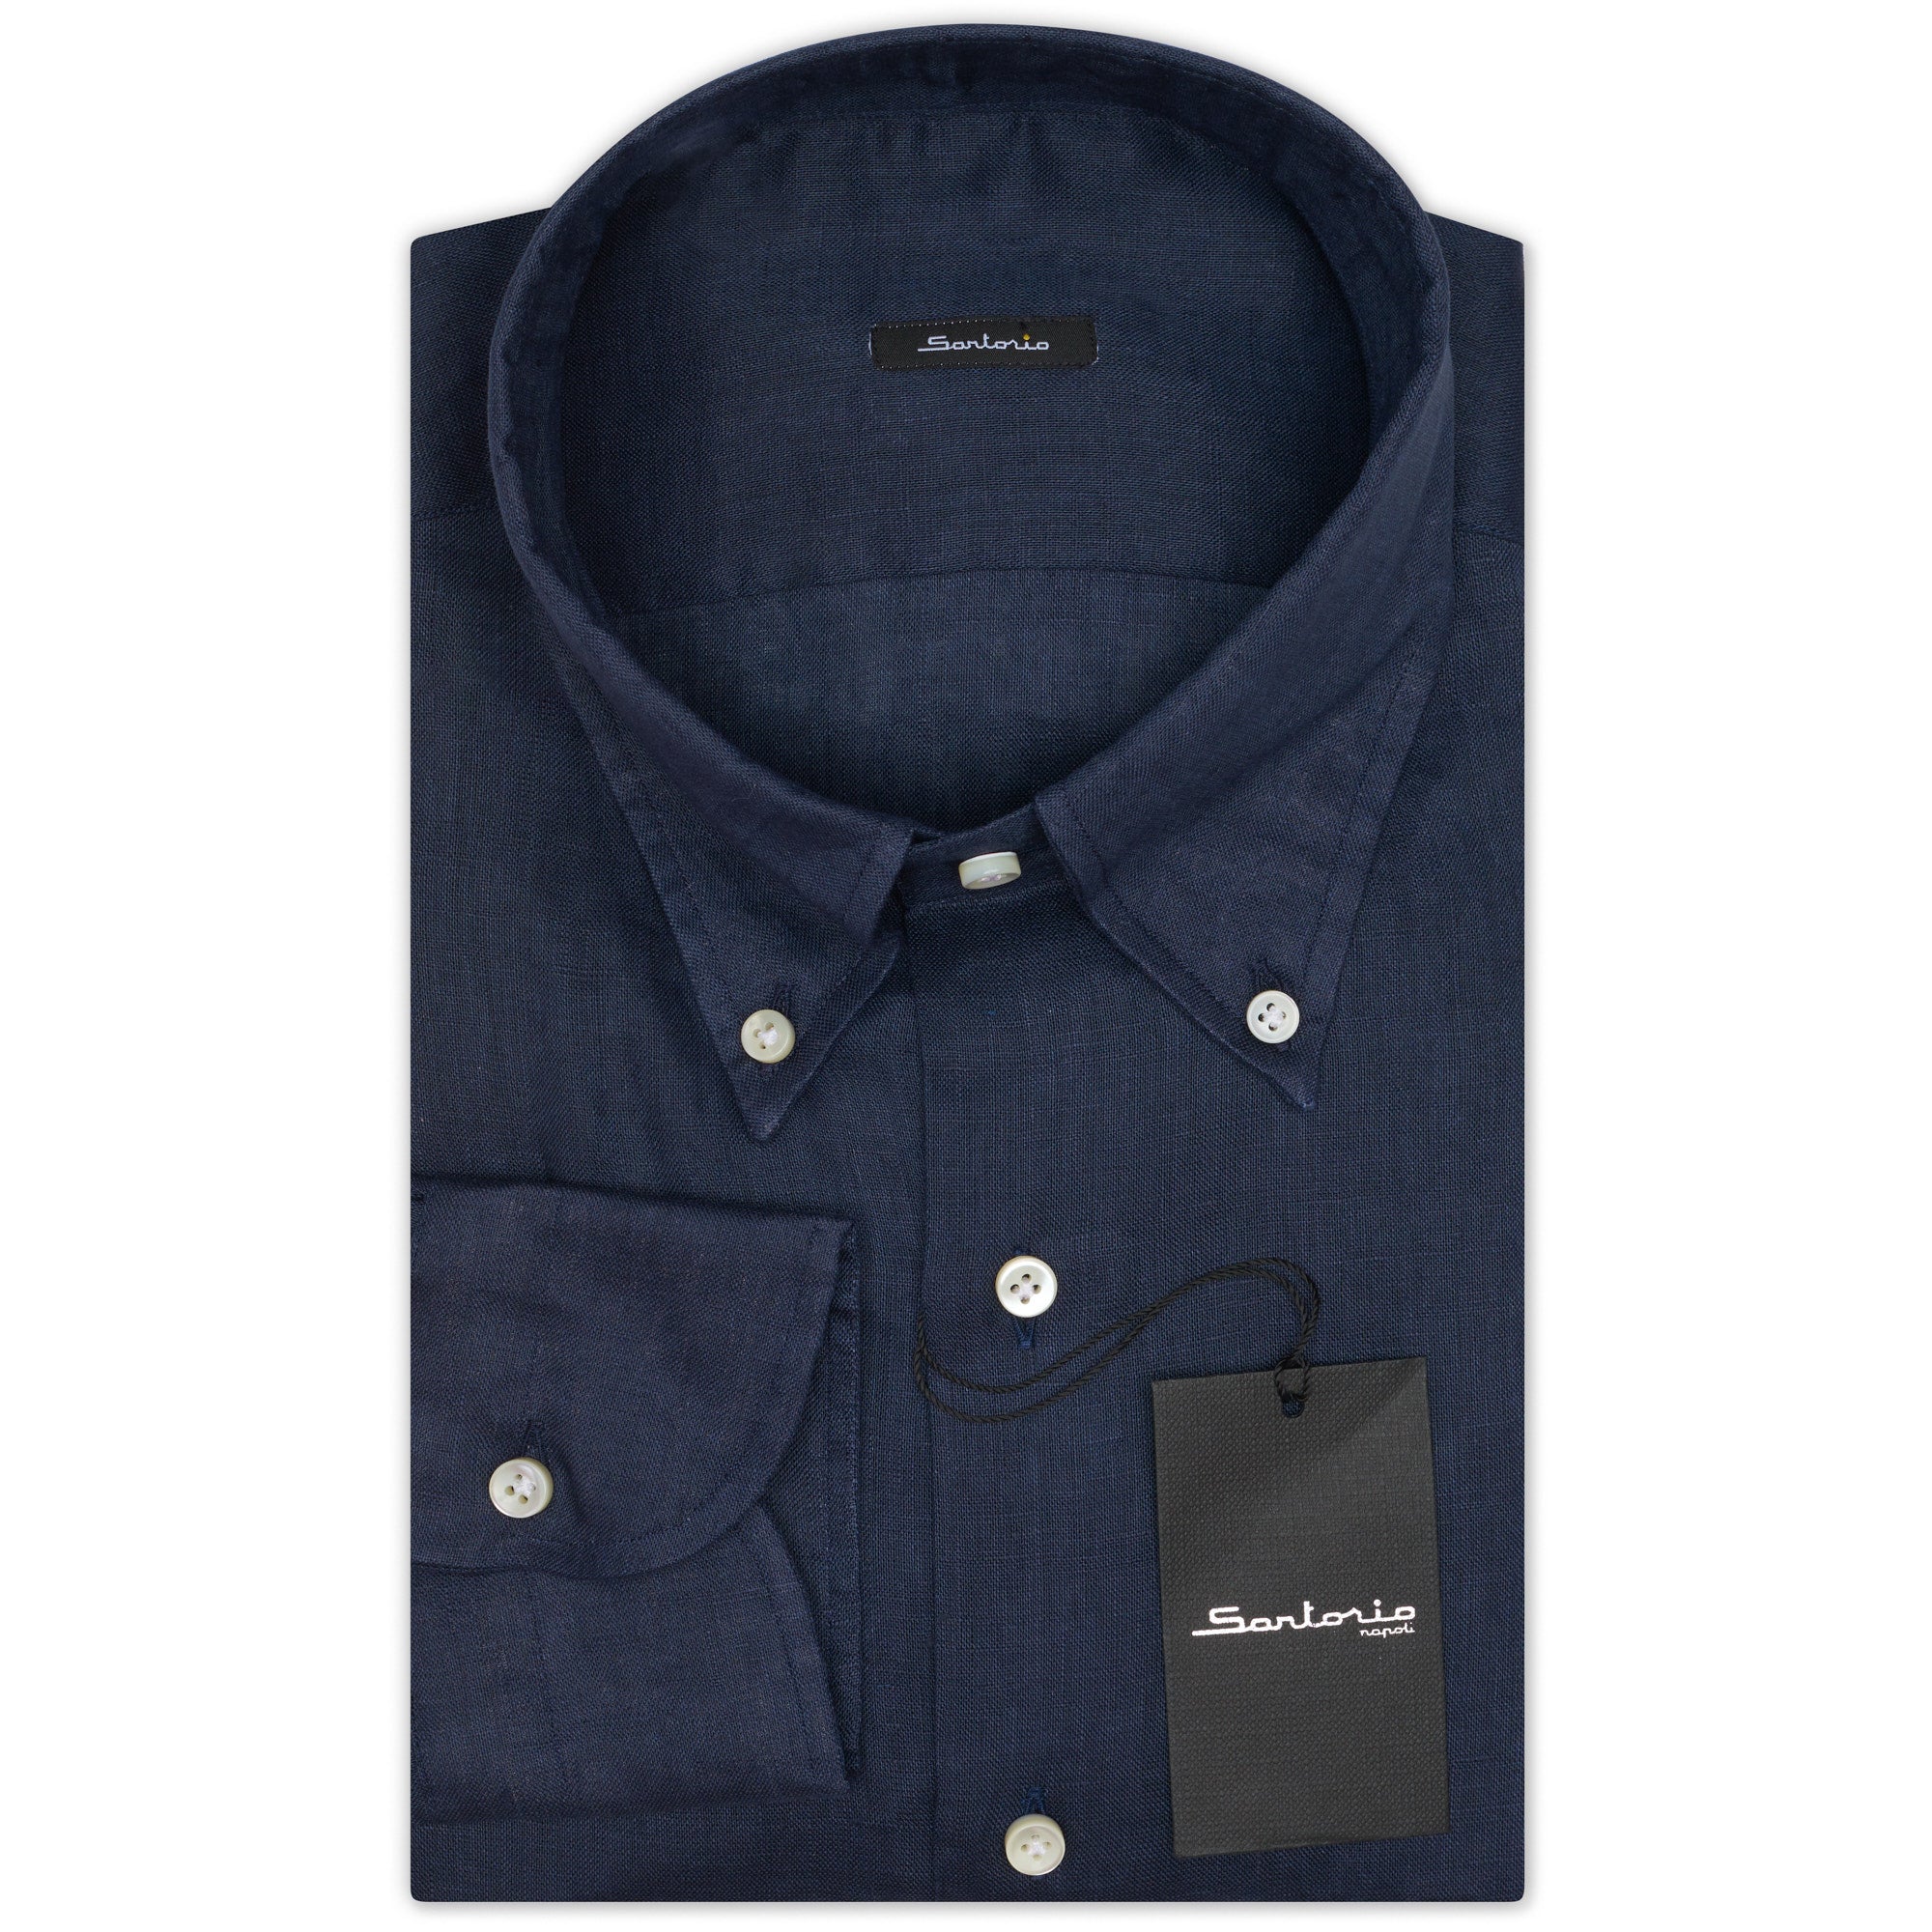 SARTORIO Napoli by KITON Indigo Blue Linen Button-Down Casual Shirt NEW